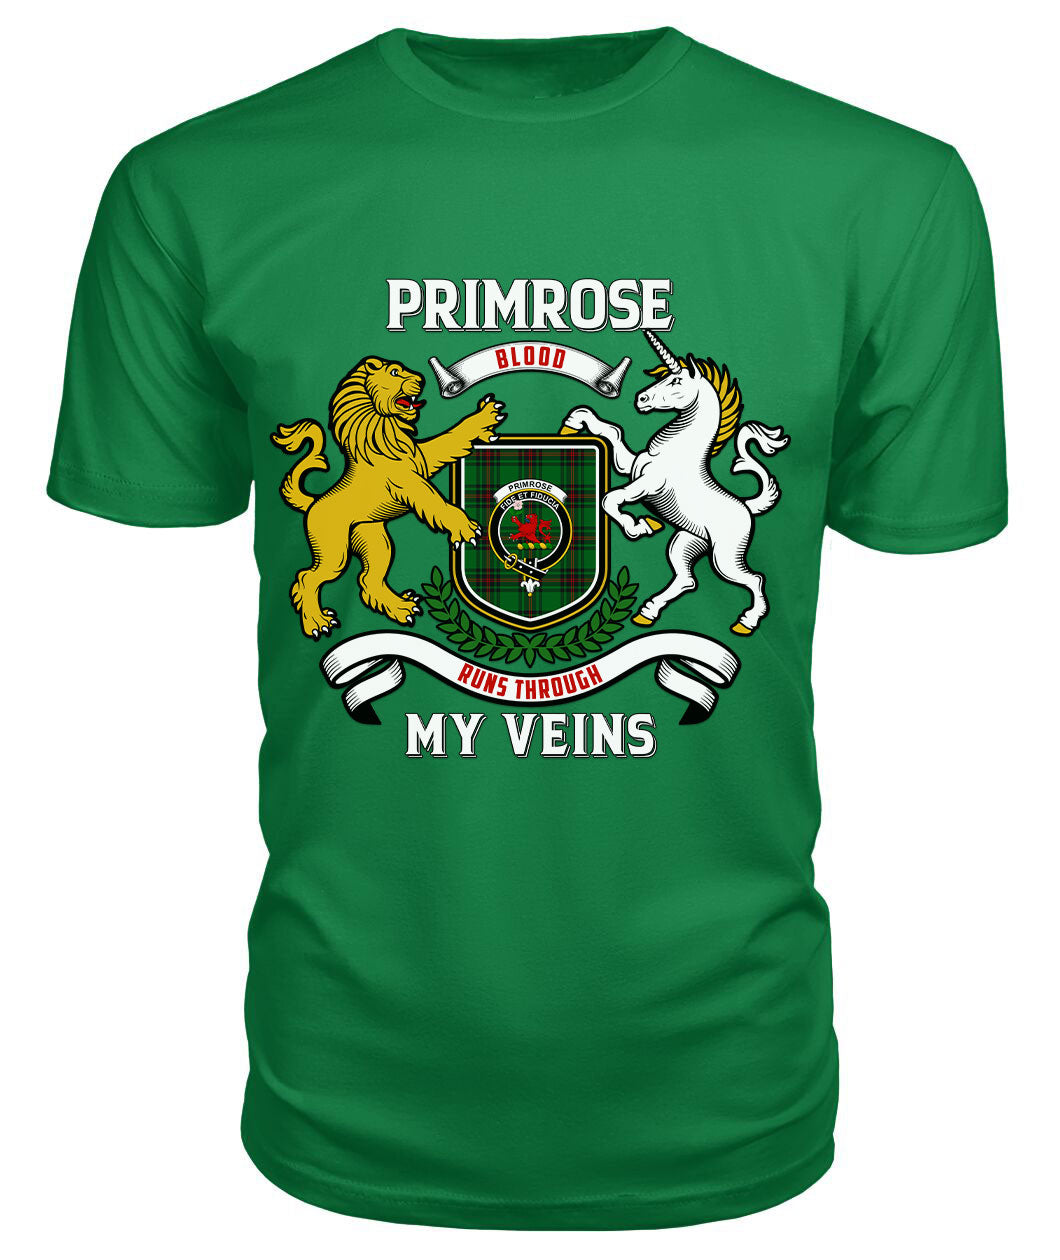 Primrose Tartan Crest 2D T-shirt - Blood Runs Through My Veins Style